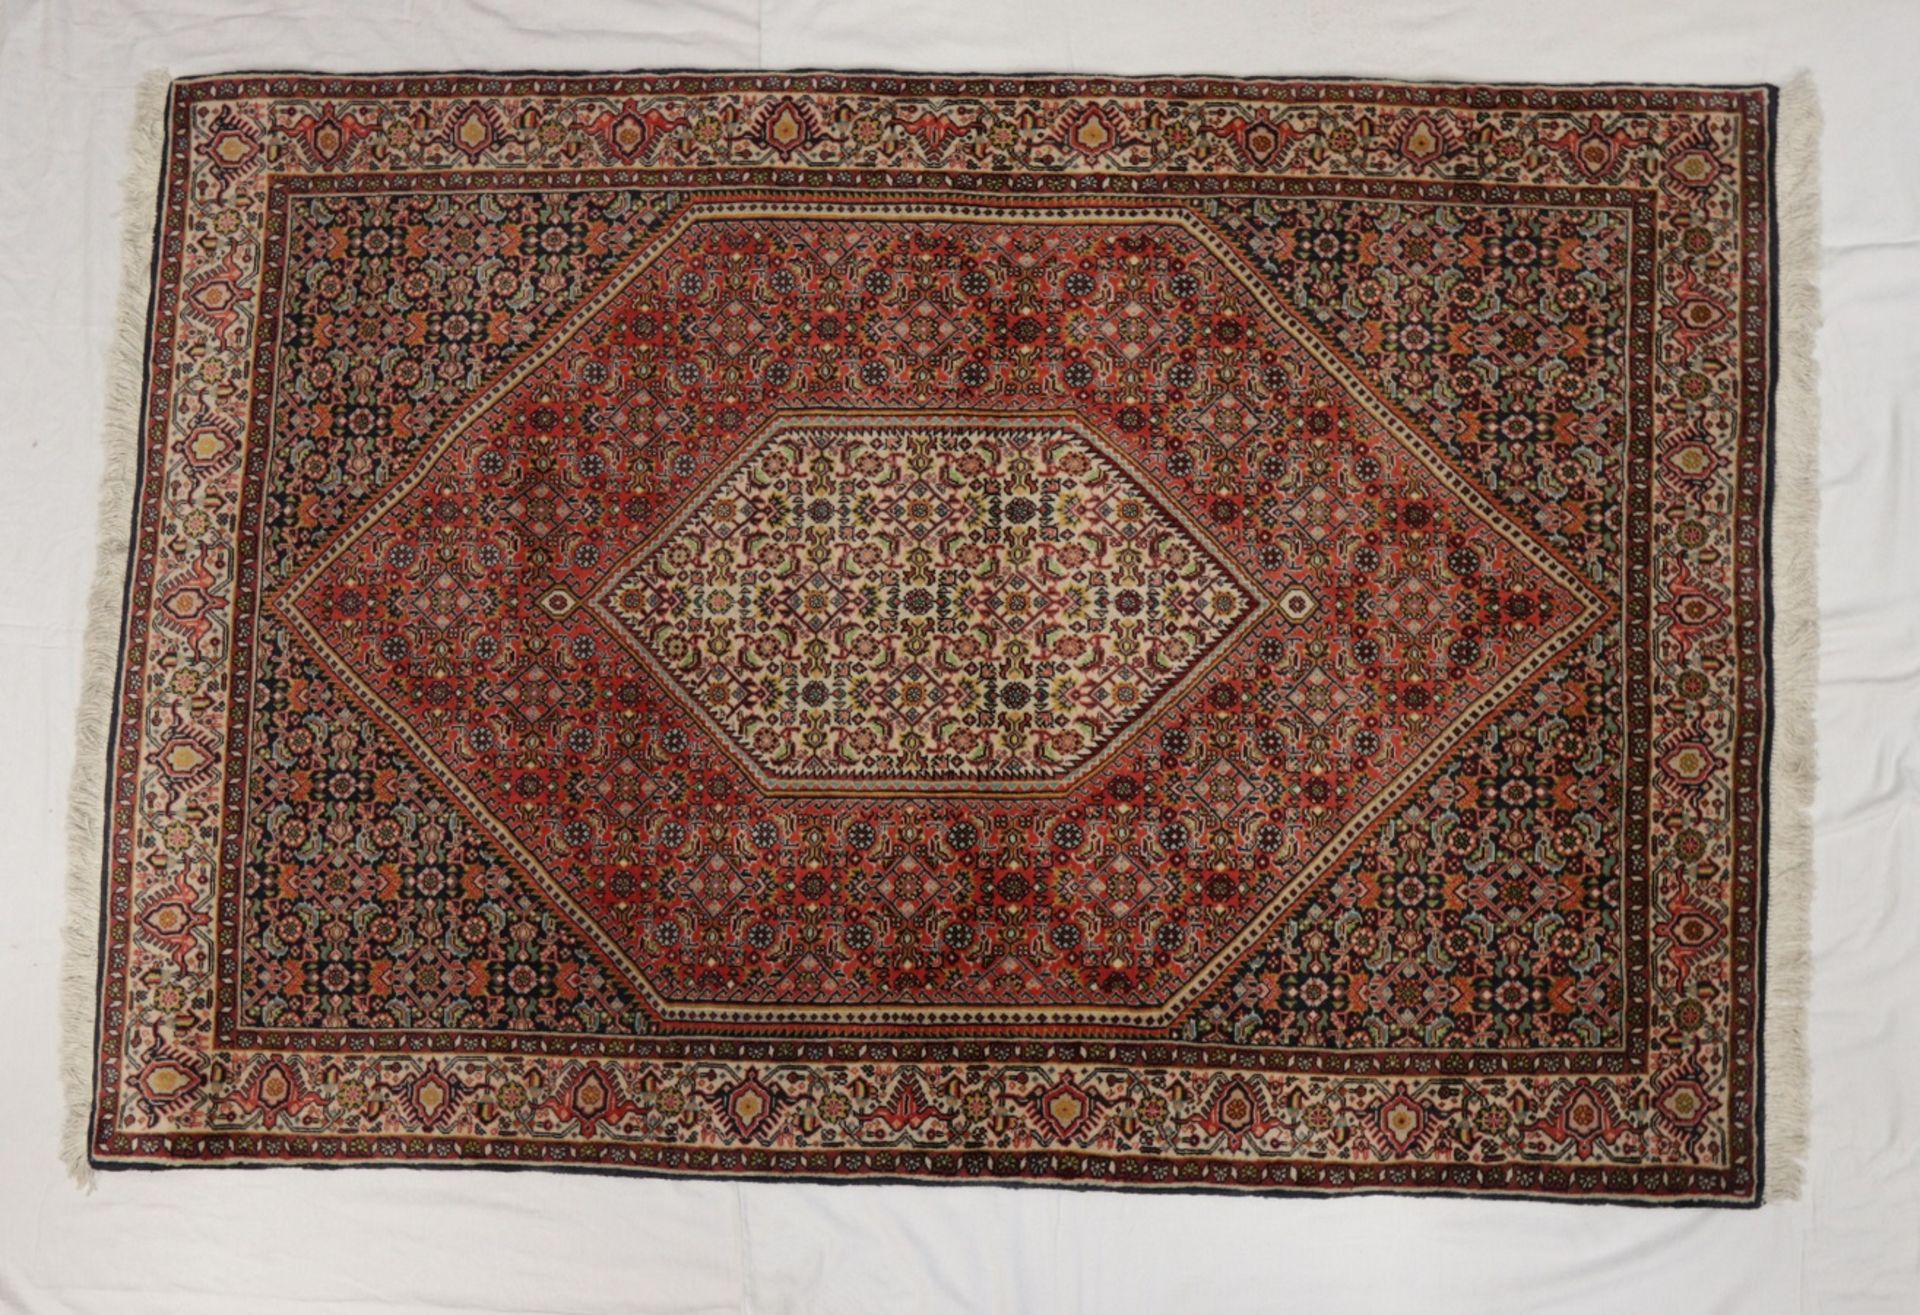 Schöner Orient Teppich 1,65 x 1,15m